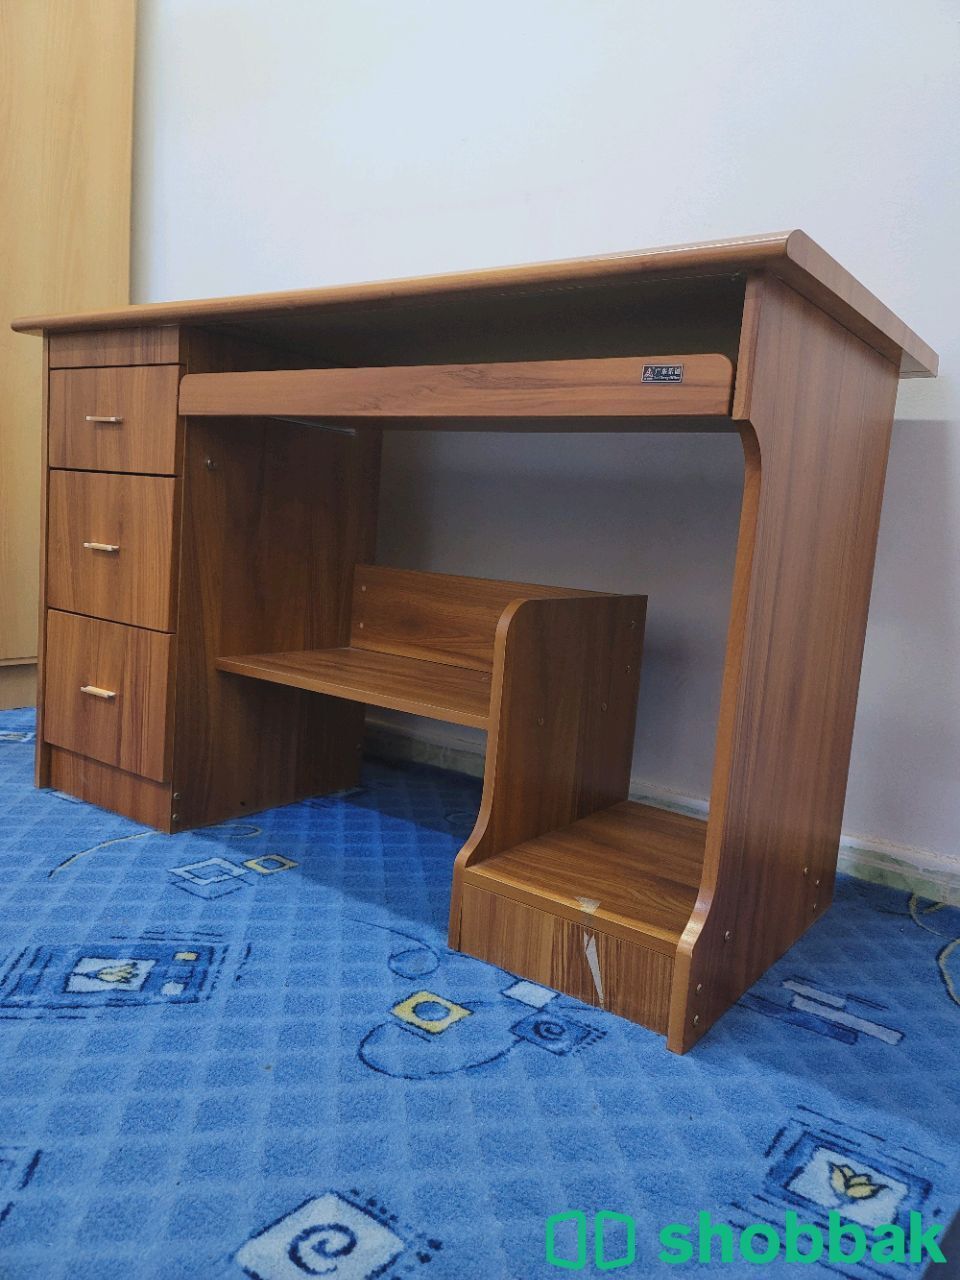 مكتب خشبي  Shobbak Saudi Arabia